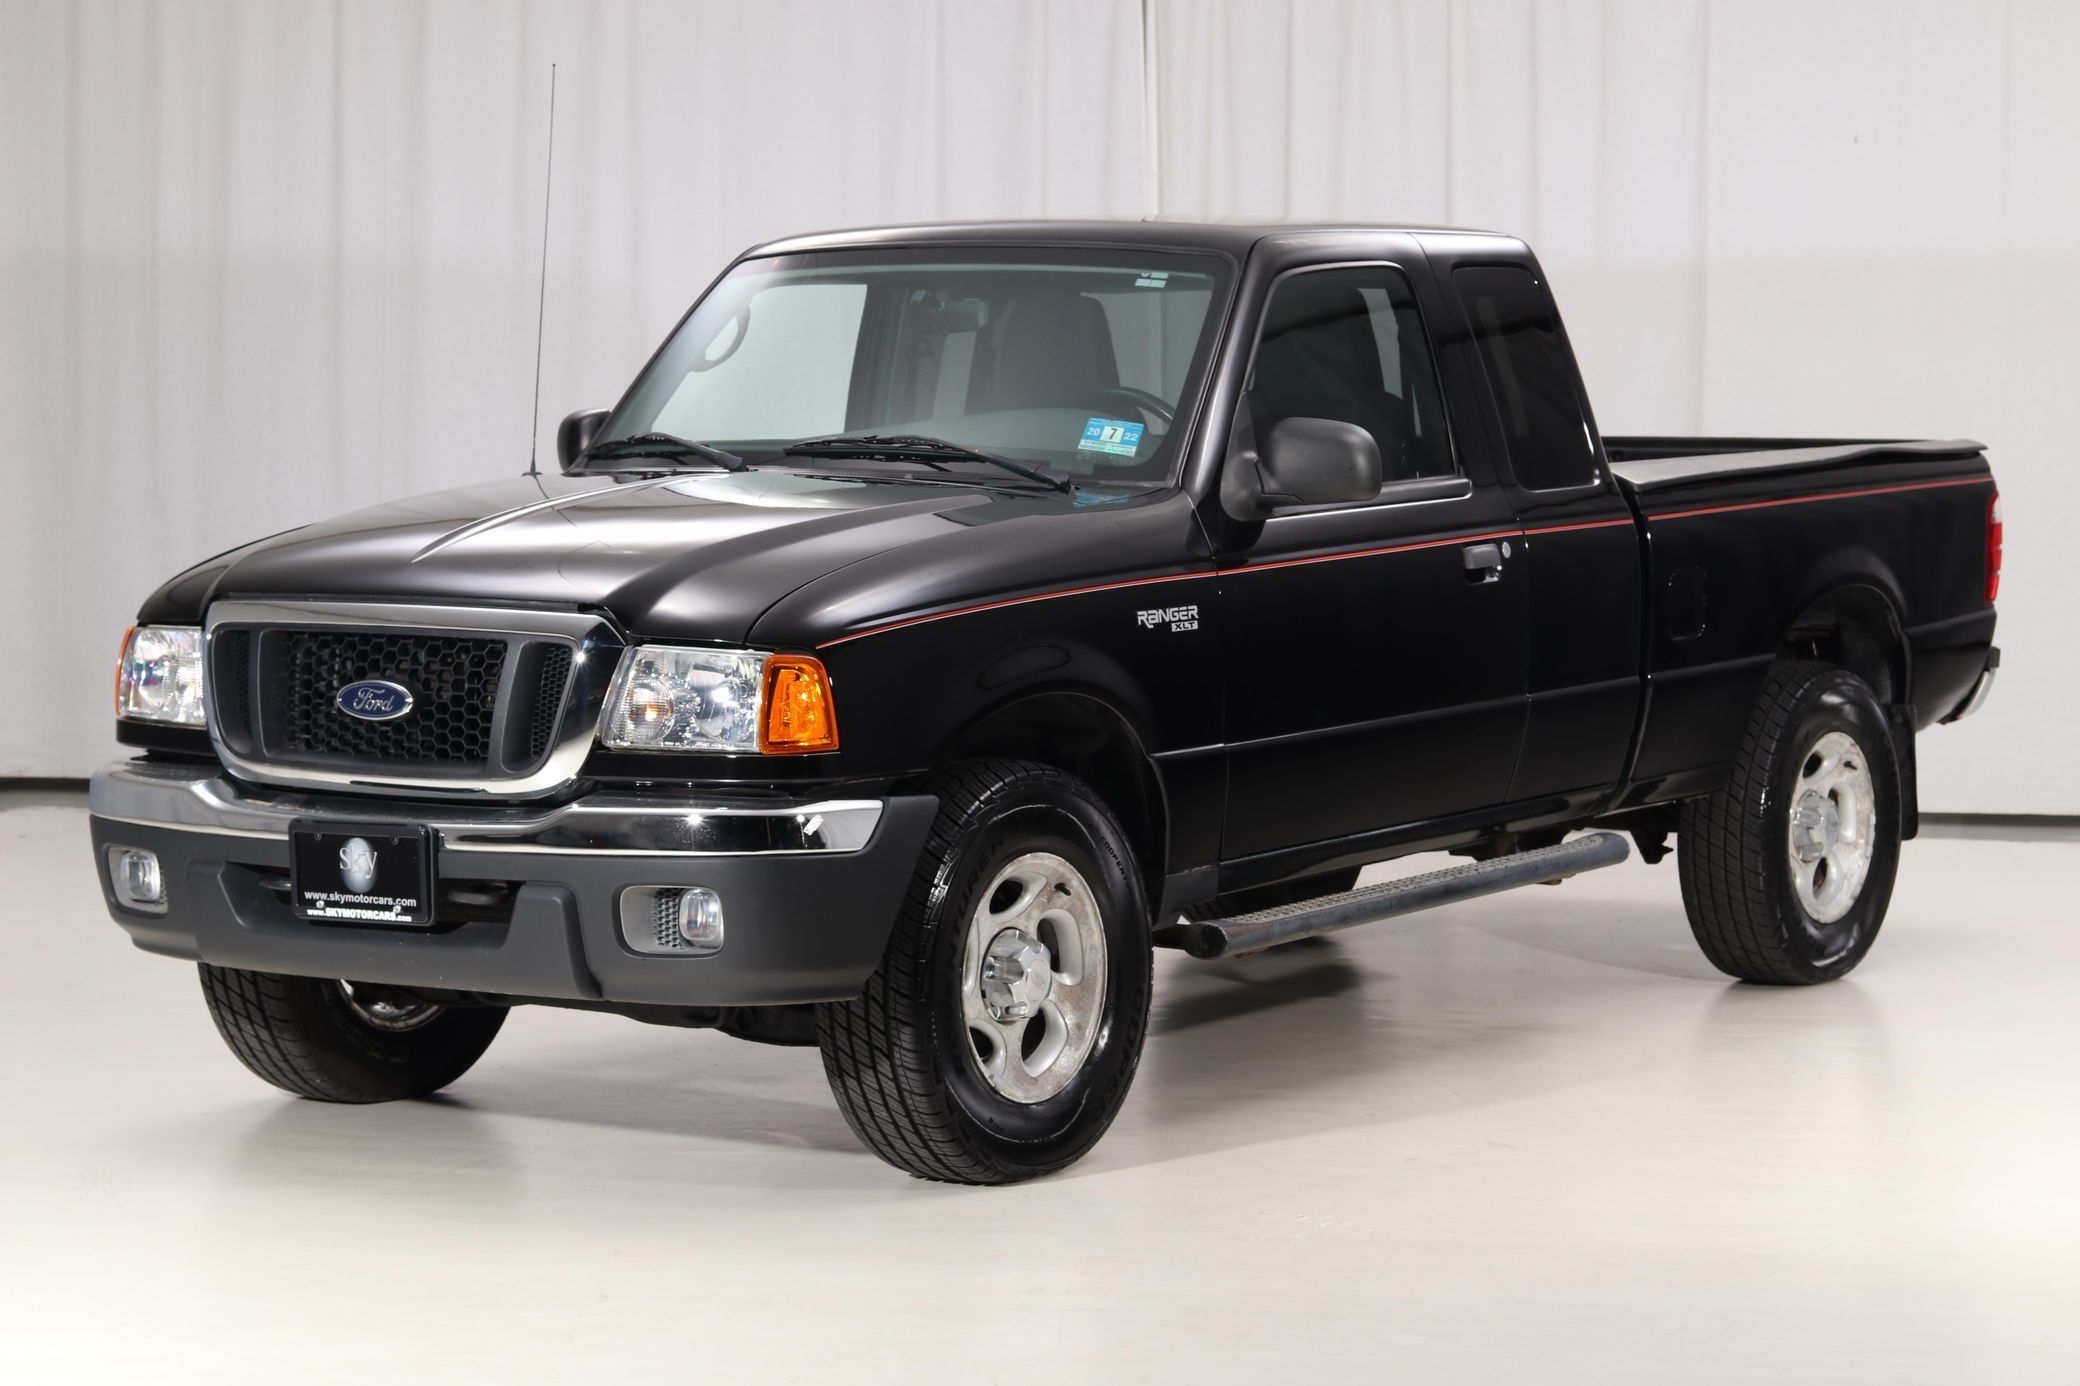 2005 Ford Ranger black pickup